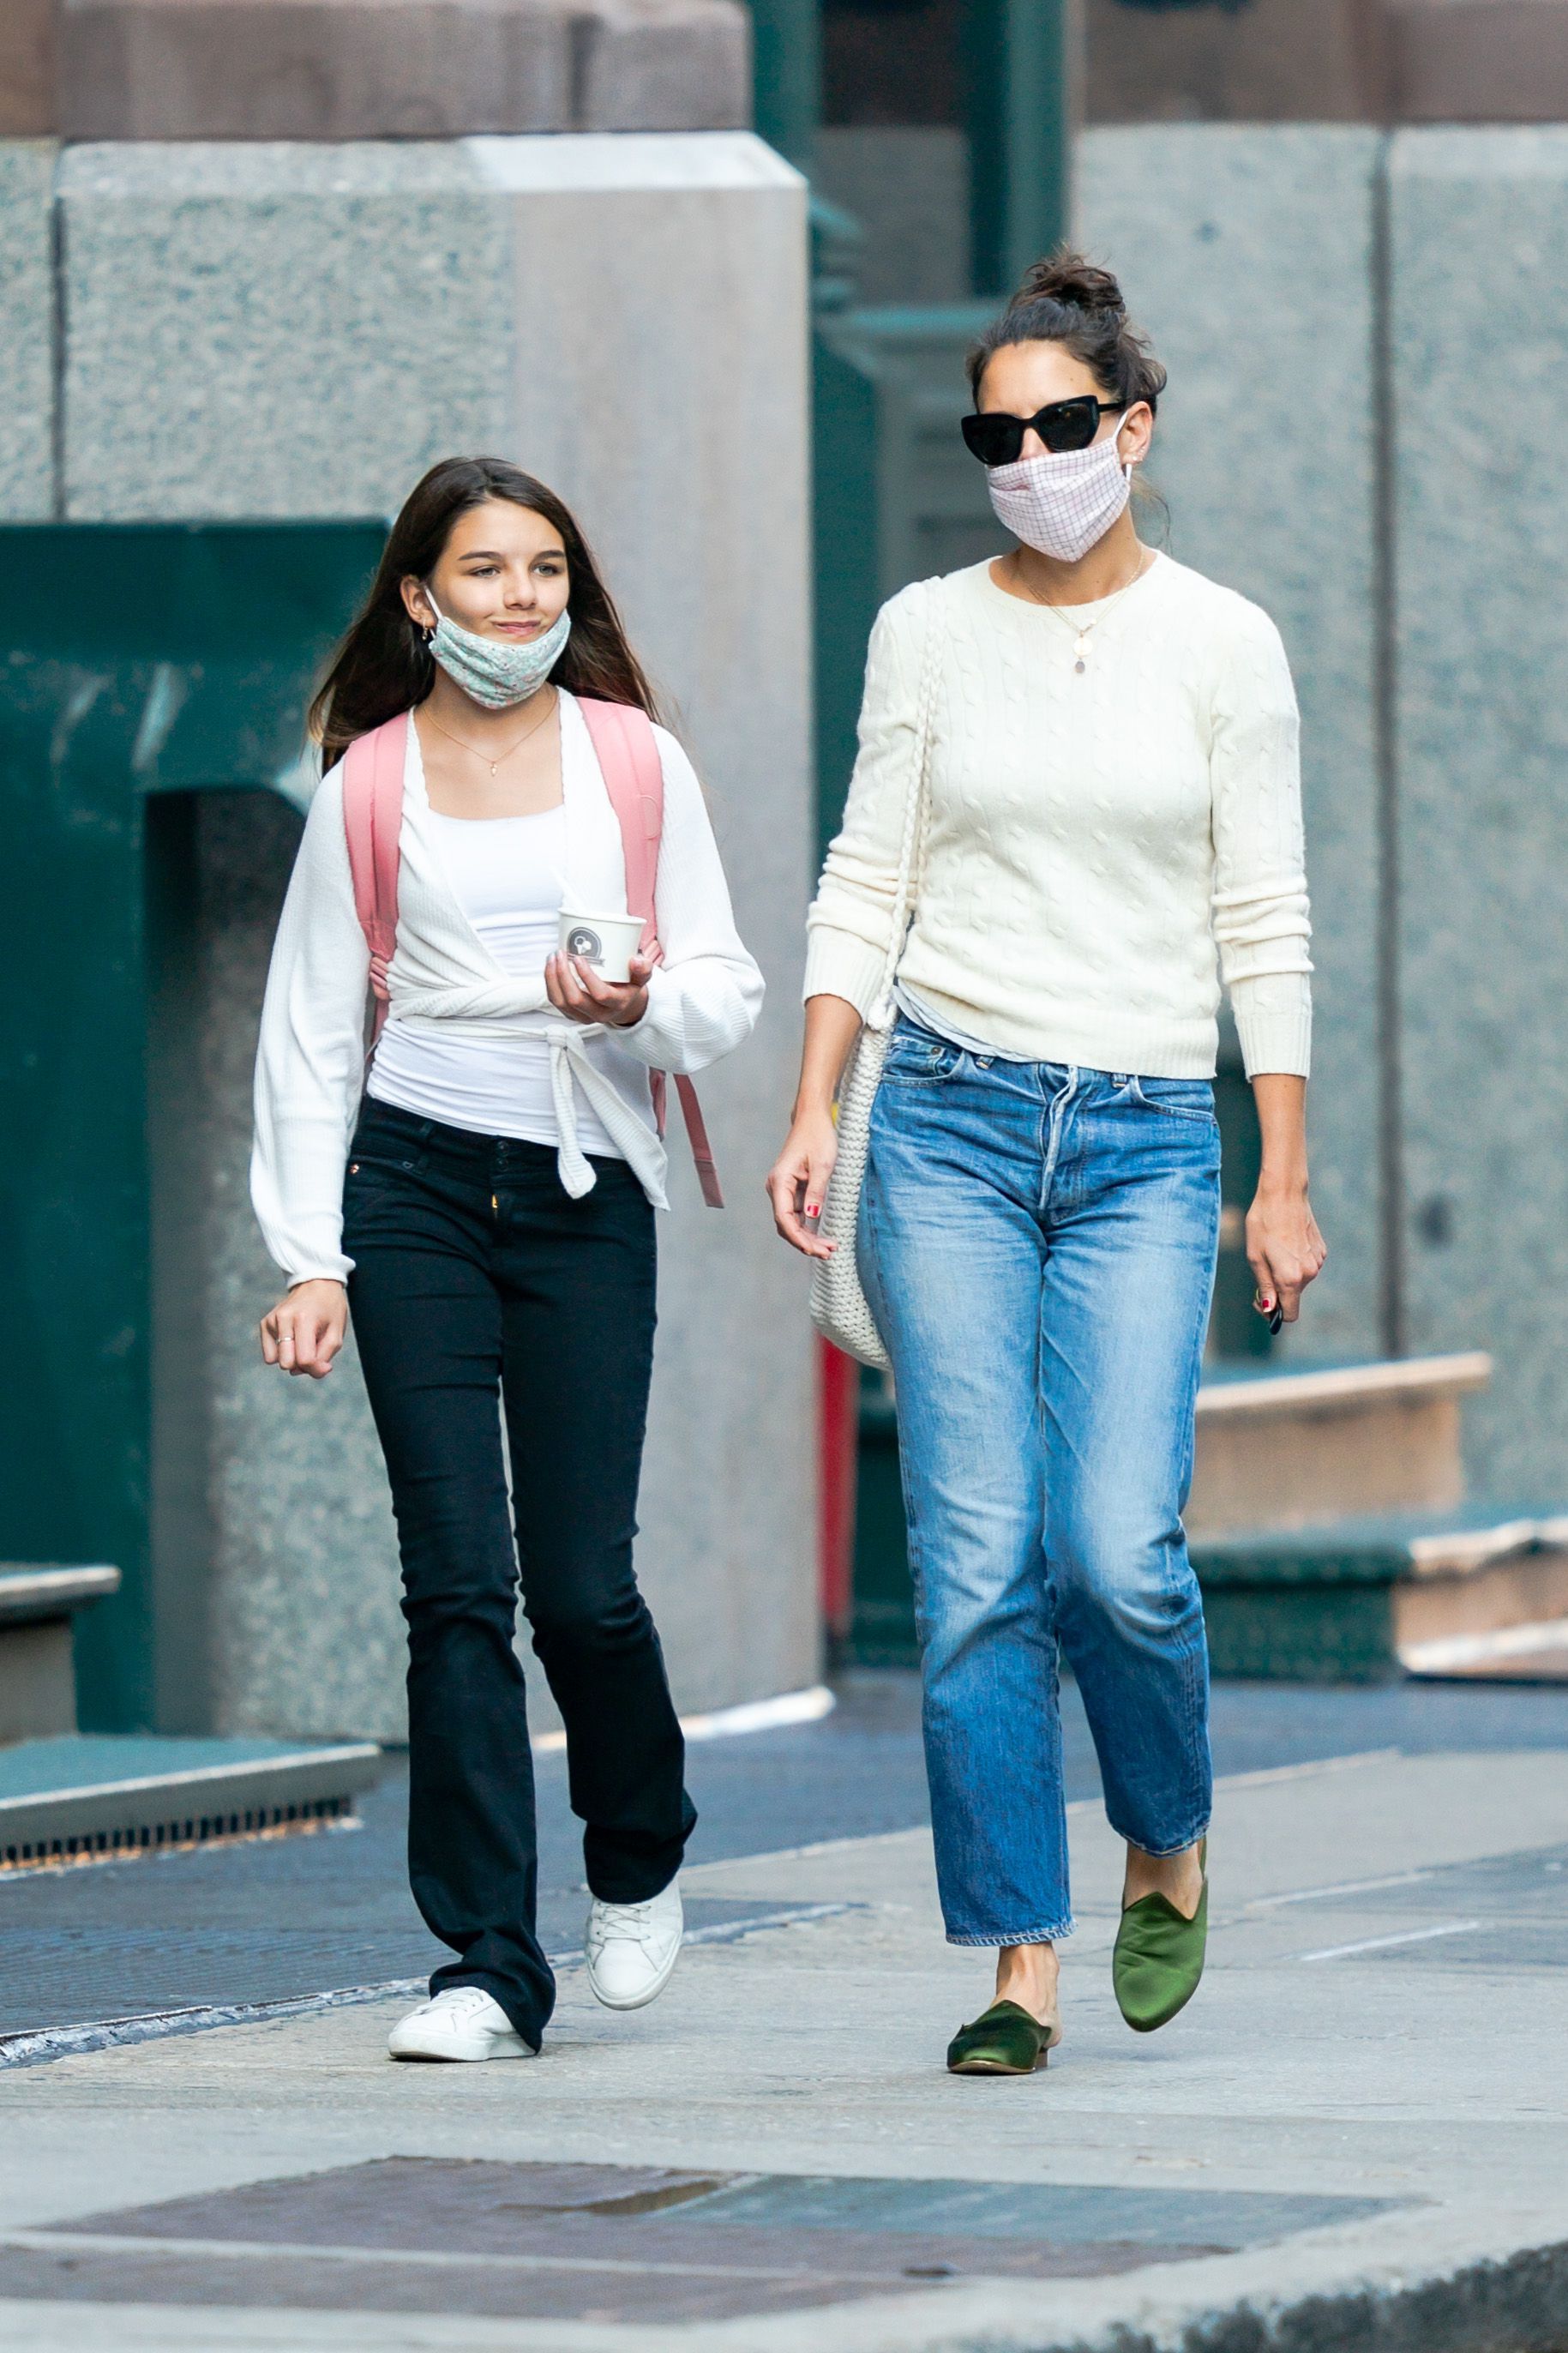 Schauspielerin Katie Holmes und ihre Tochter Suri am 8. September 2020 in New York City | Quelle: Getty Images